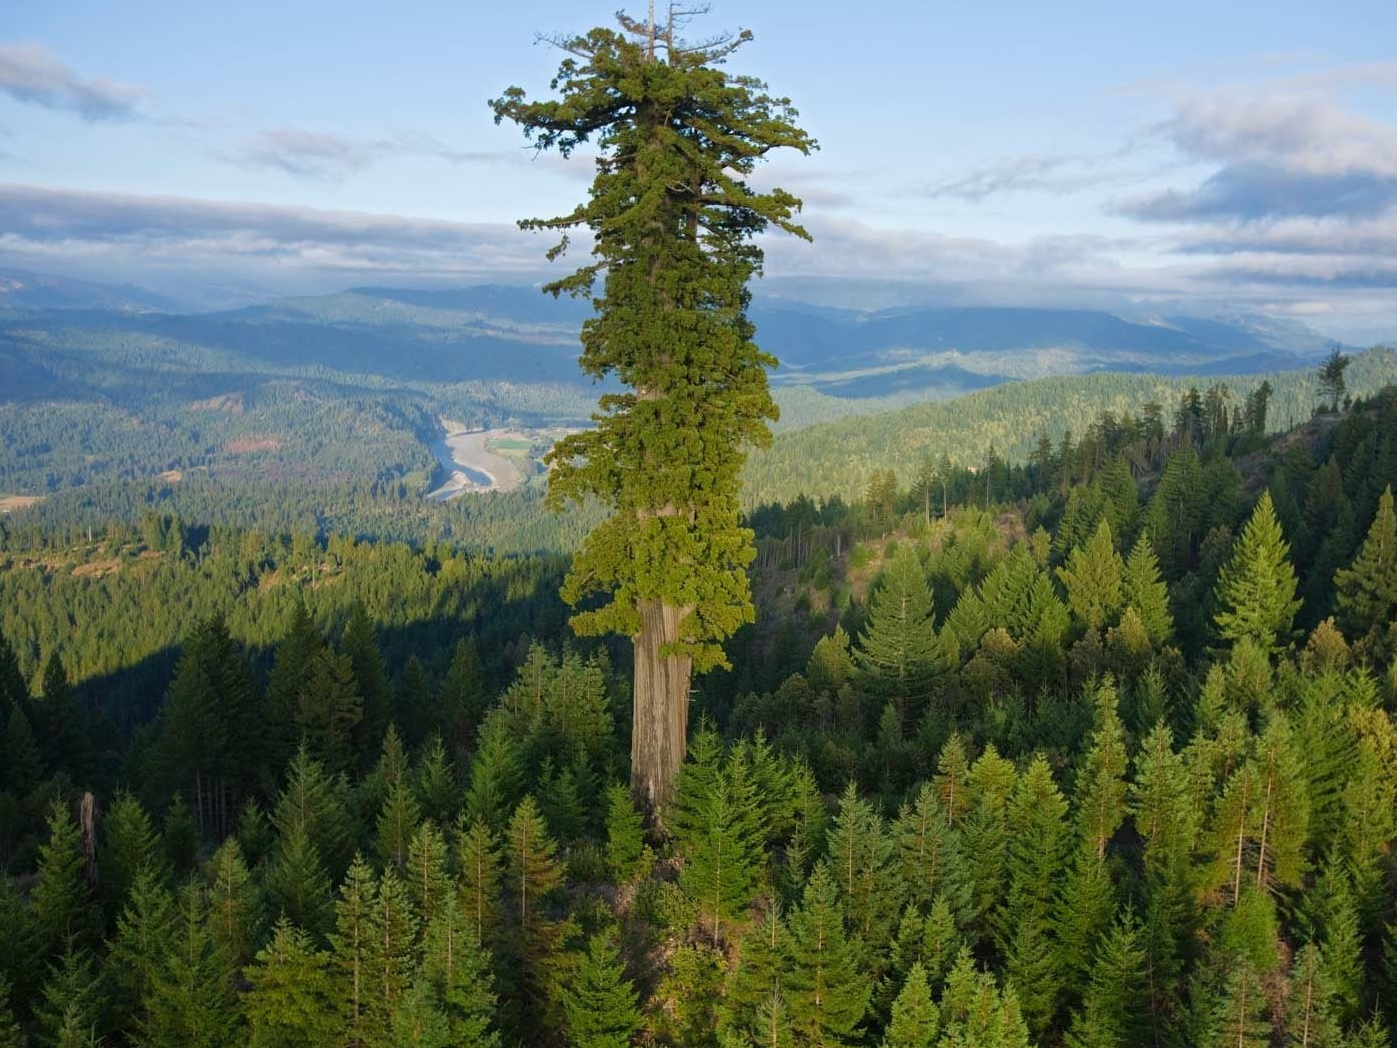 Da li znate koliko je visoko najviše drvo naše planete?